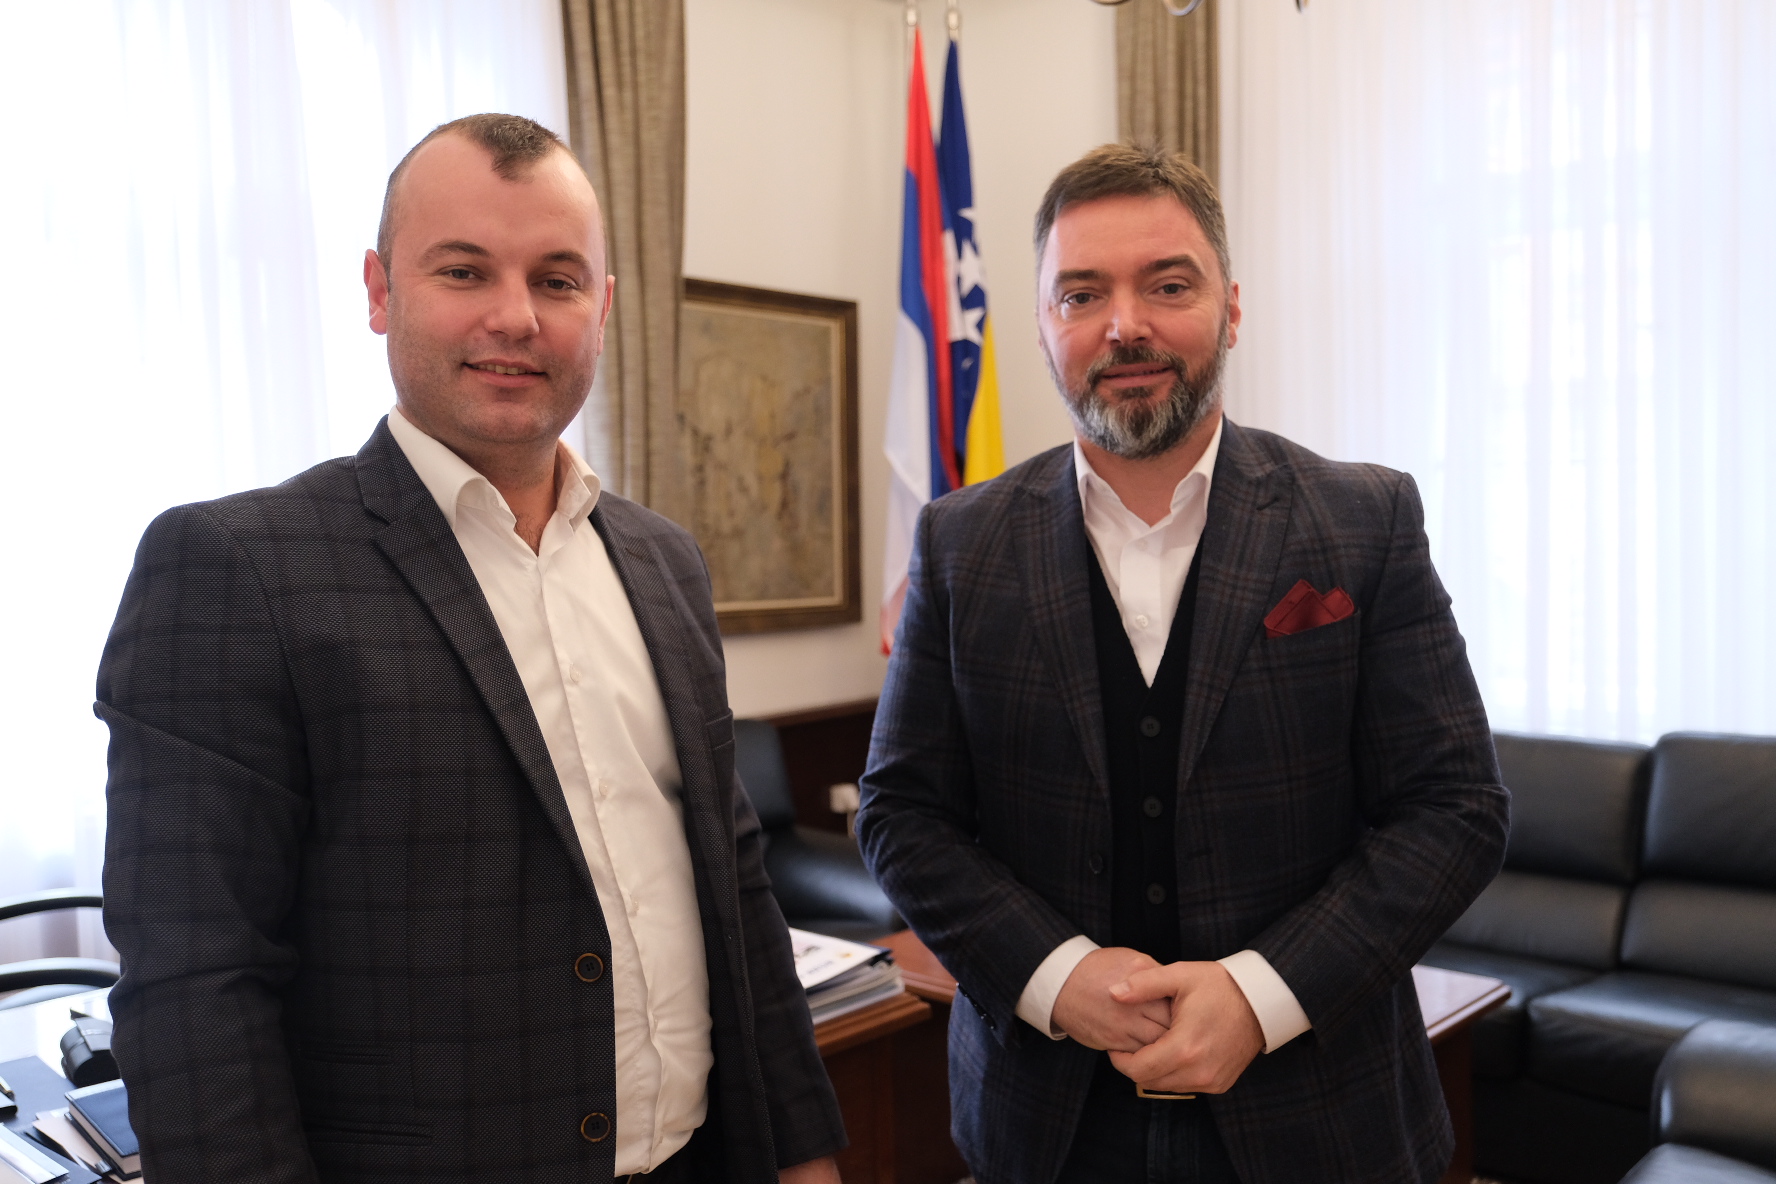 Picture for Ministar Košarac i načelnik Grujičić o aktualnim gospodarskim i političkim temama